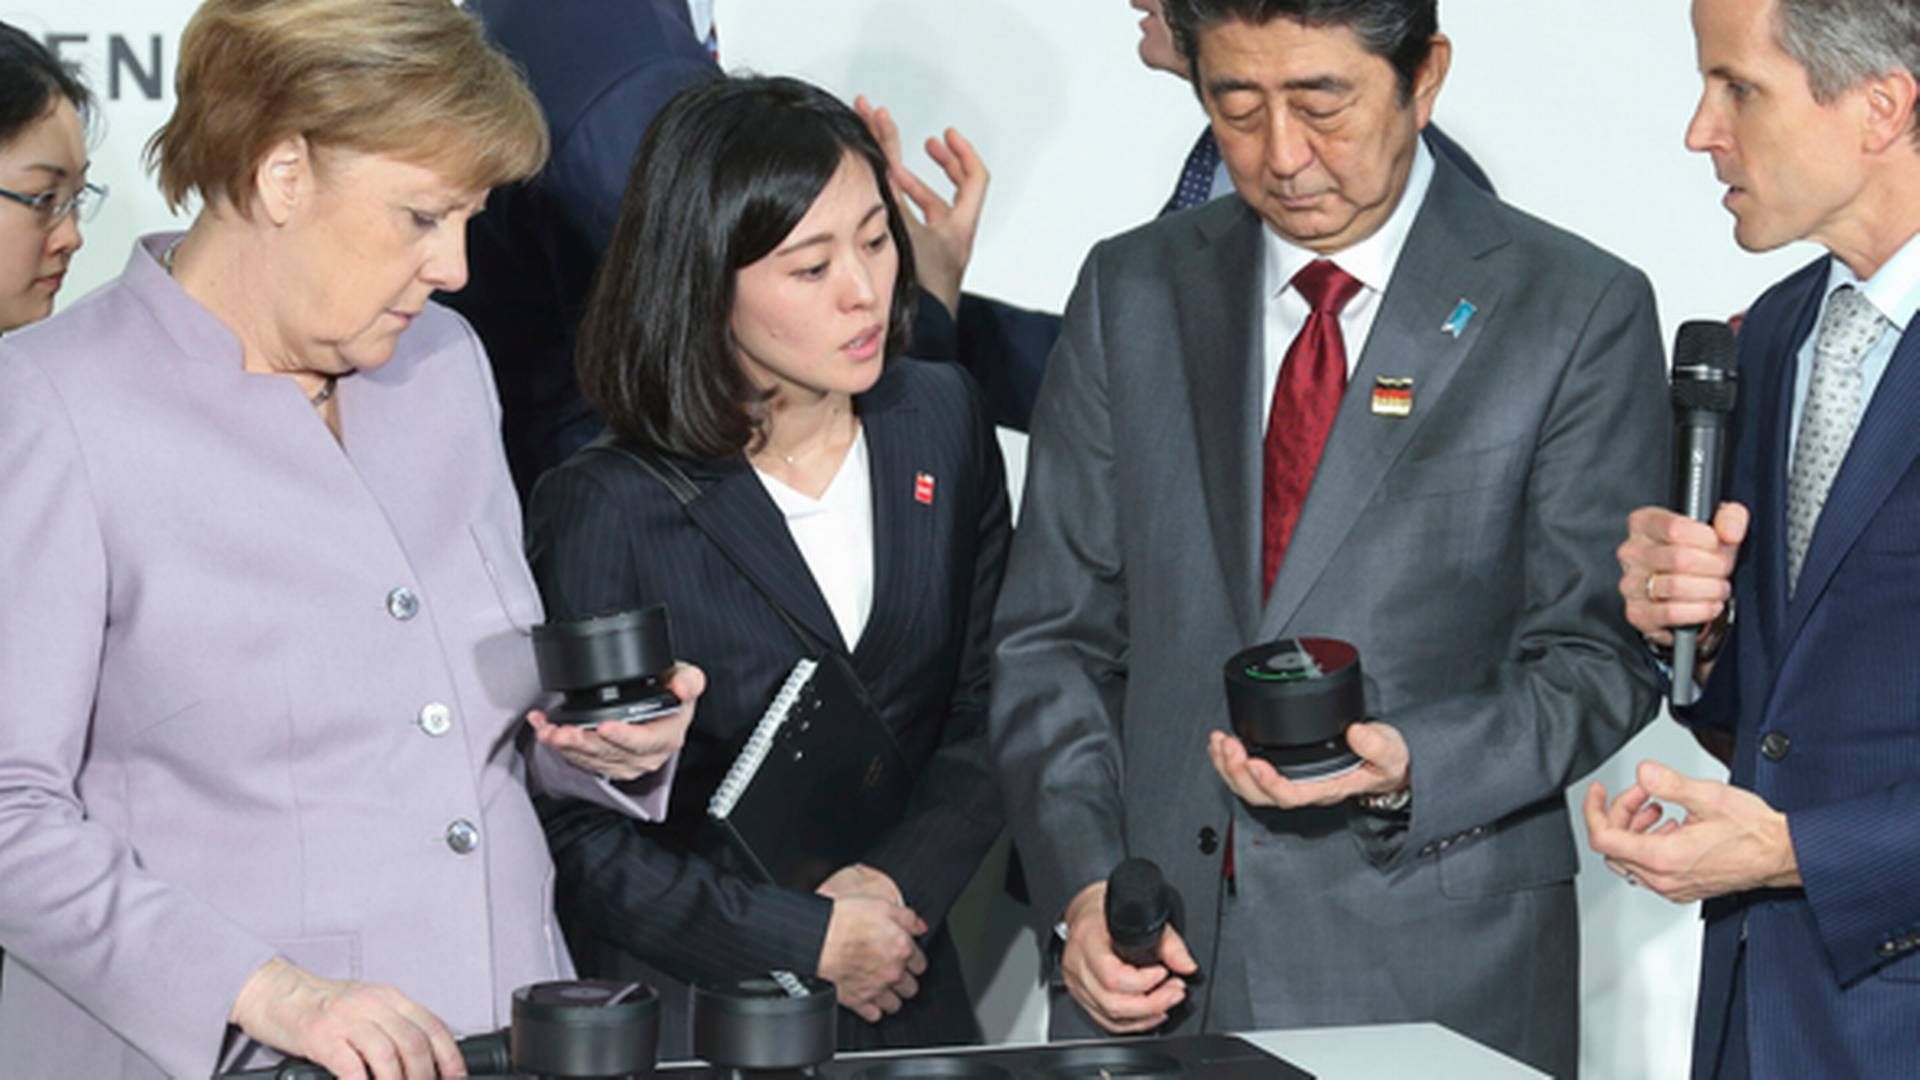 Den tyske kansler Angela Merkel inspicerer Sennheisers produkter på Cebit-messen sammen med den japanske ministerpræsident Shinzo Abe og Andreas Sennheiser ydest til højre.